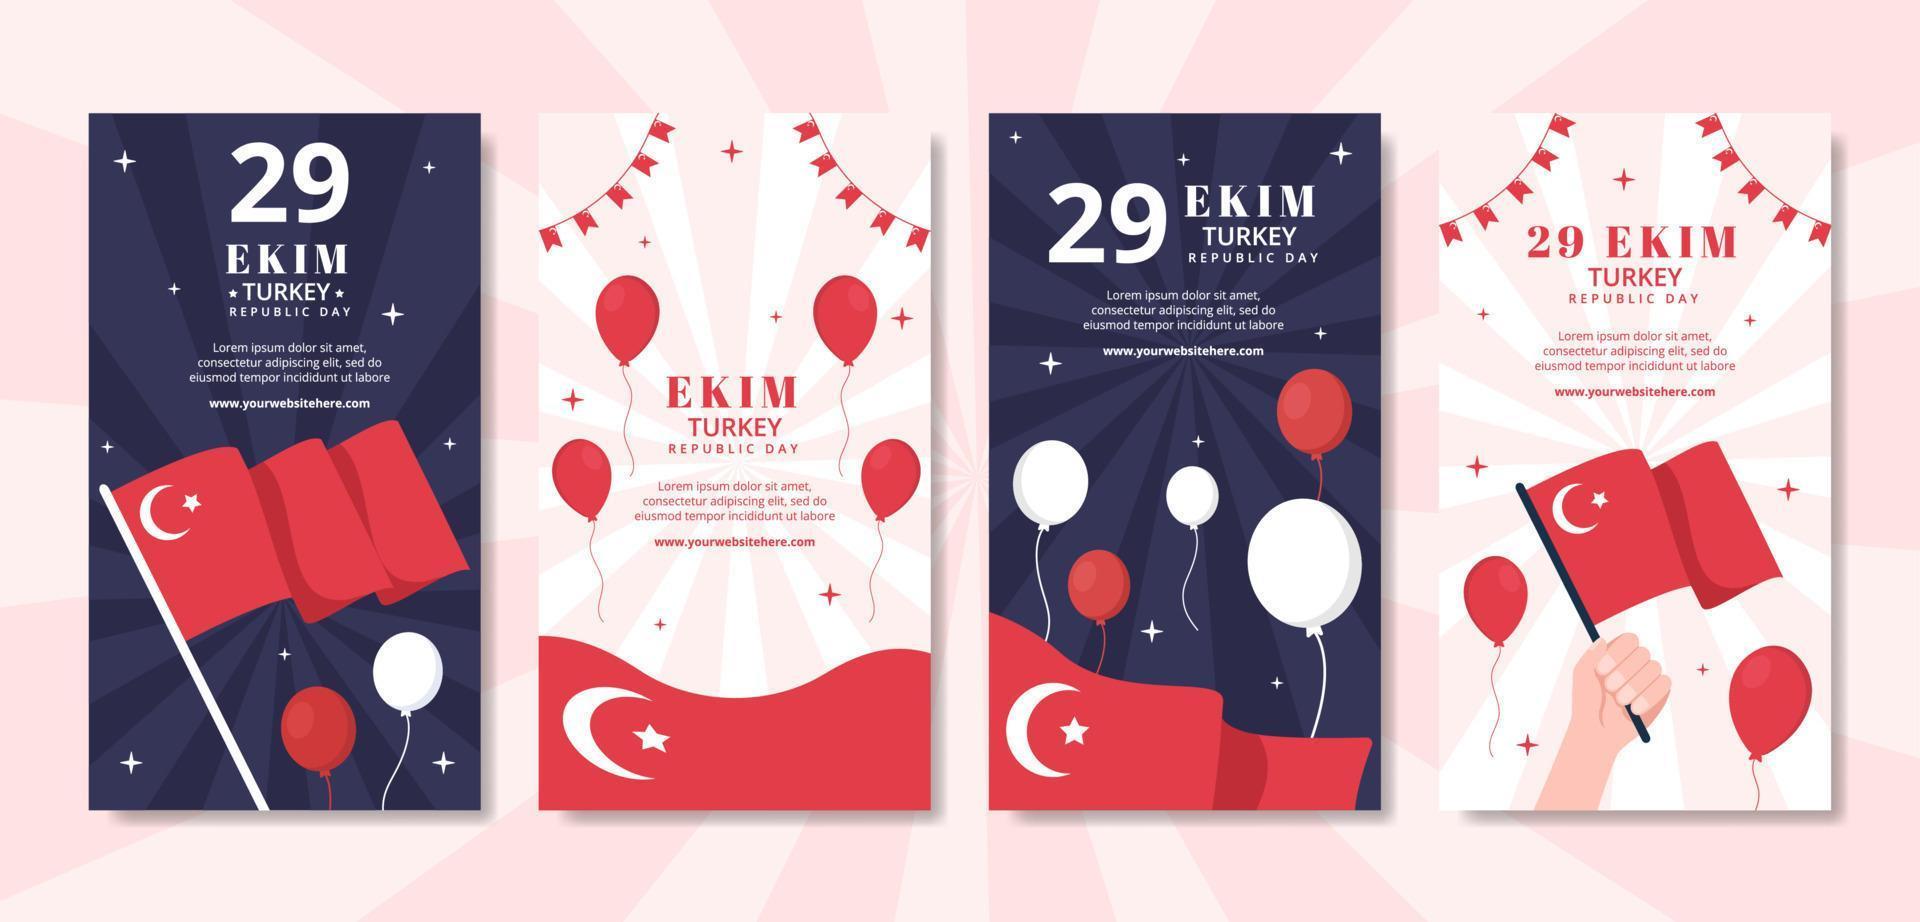 29 ekim turkey republic day modèle d'histoires de médias sociaux illustration plate de dessin animé dessiné à la main vecteur